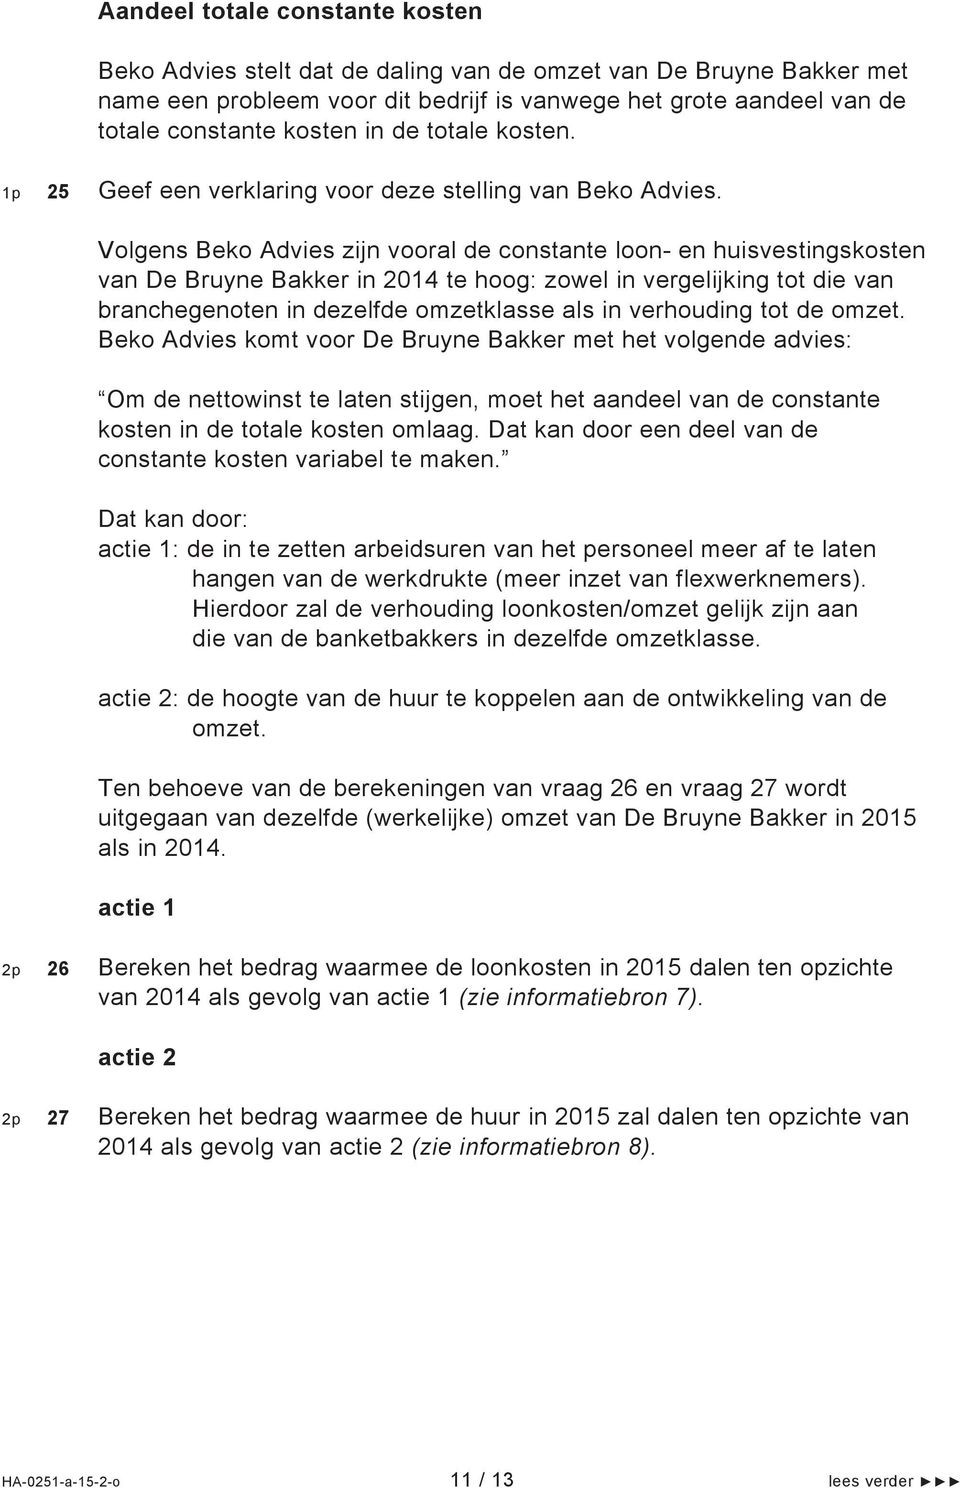 Volgens Beko Advies zijn vooral de constante loon- en huisvestingskosten van De Bruyne Bakker in 2014 te hoog: zowel in vergelijking tot die van branchegenoten in dezelfde omzetklasse als in